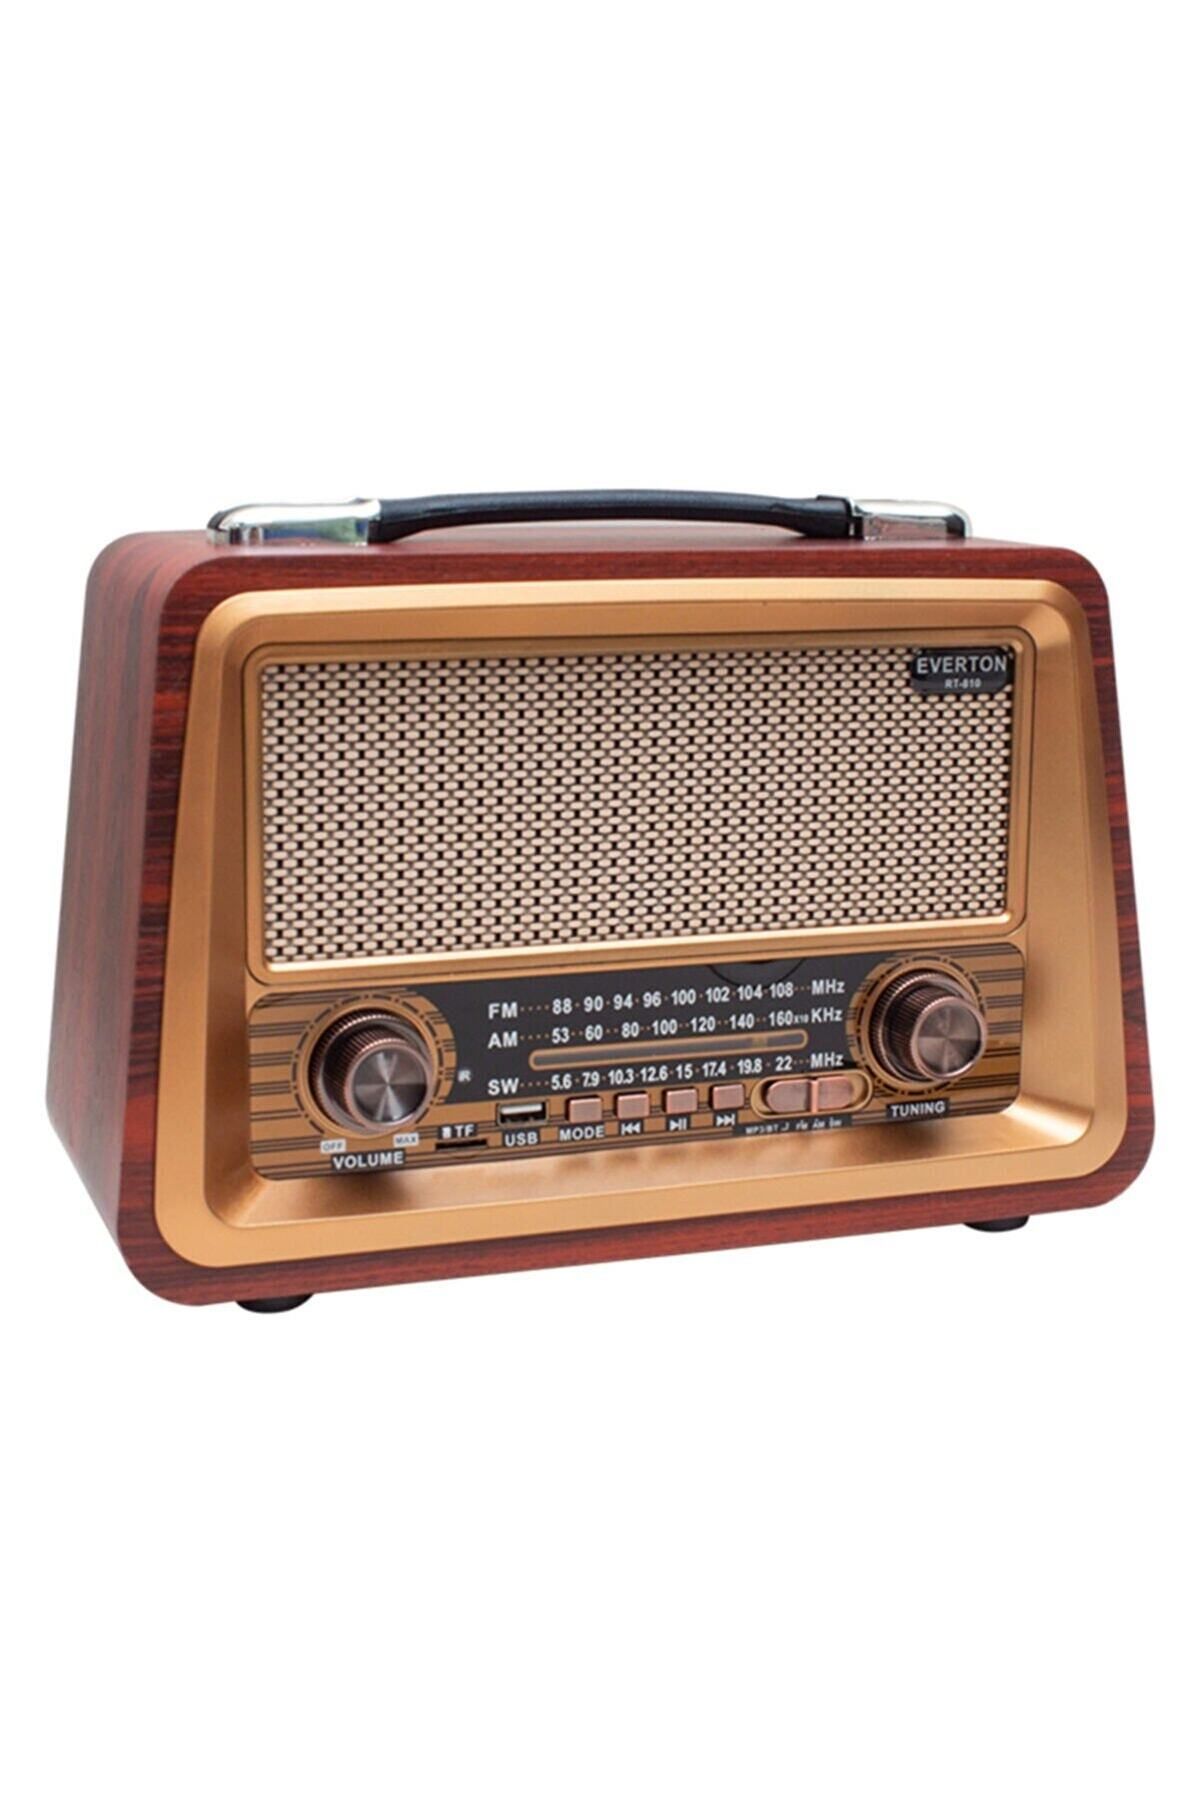 gaman Ahşap Büyük Nostaljik Radyo Kırmızı Bluetooth Aux Usb Fm Müzik Çalar Rt-810